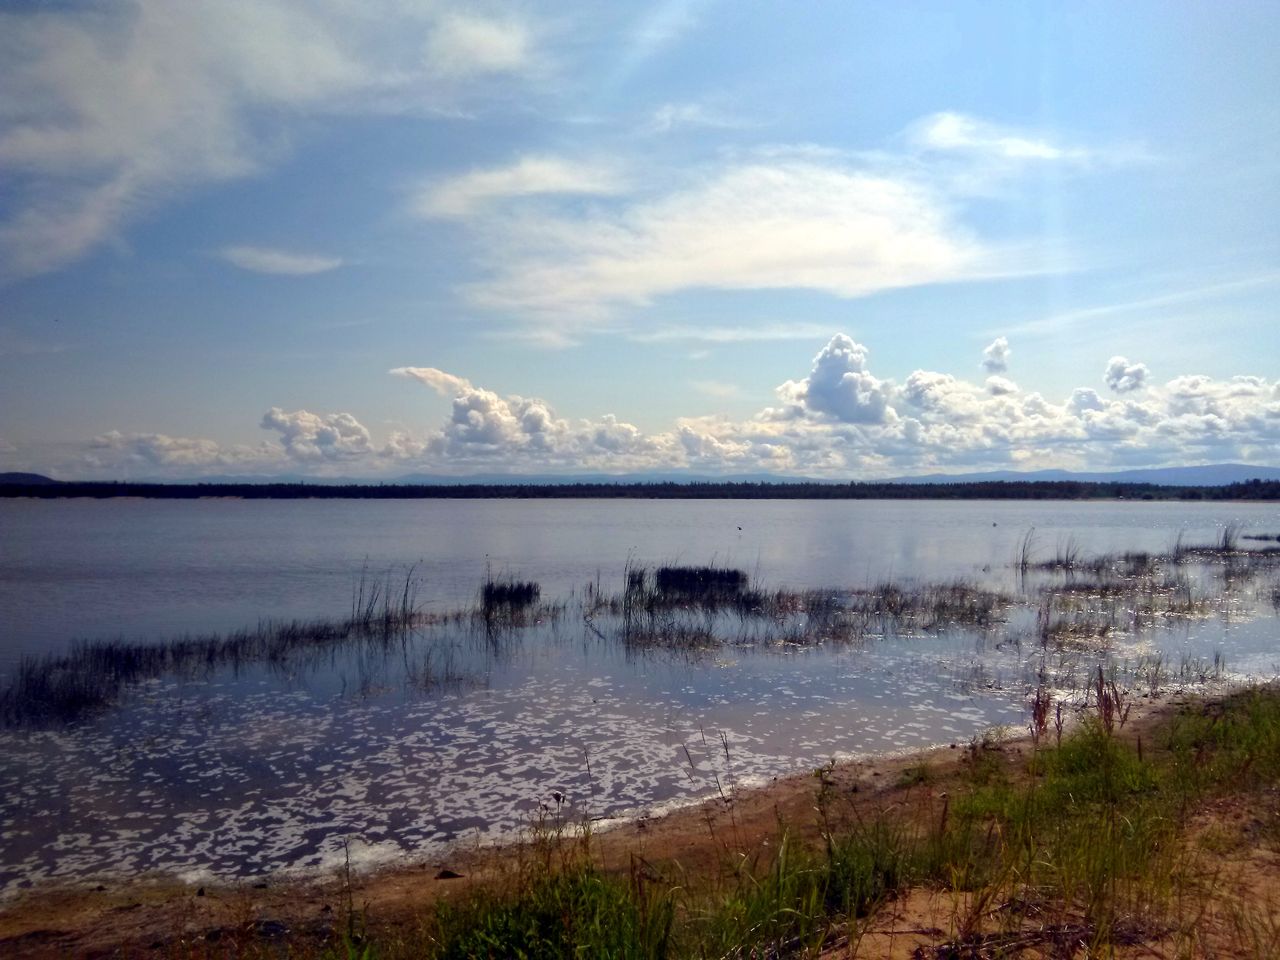 Девственная природа Байкала у Чивыркуйского залива | Цена 8900₽, отзывы, описание экскурсии